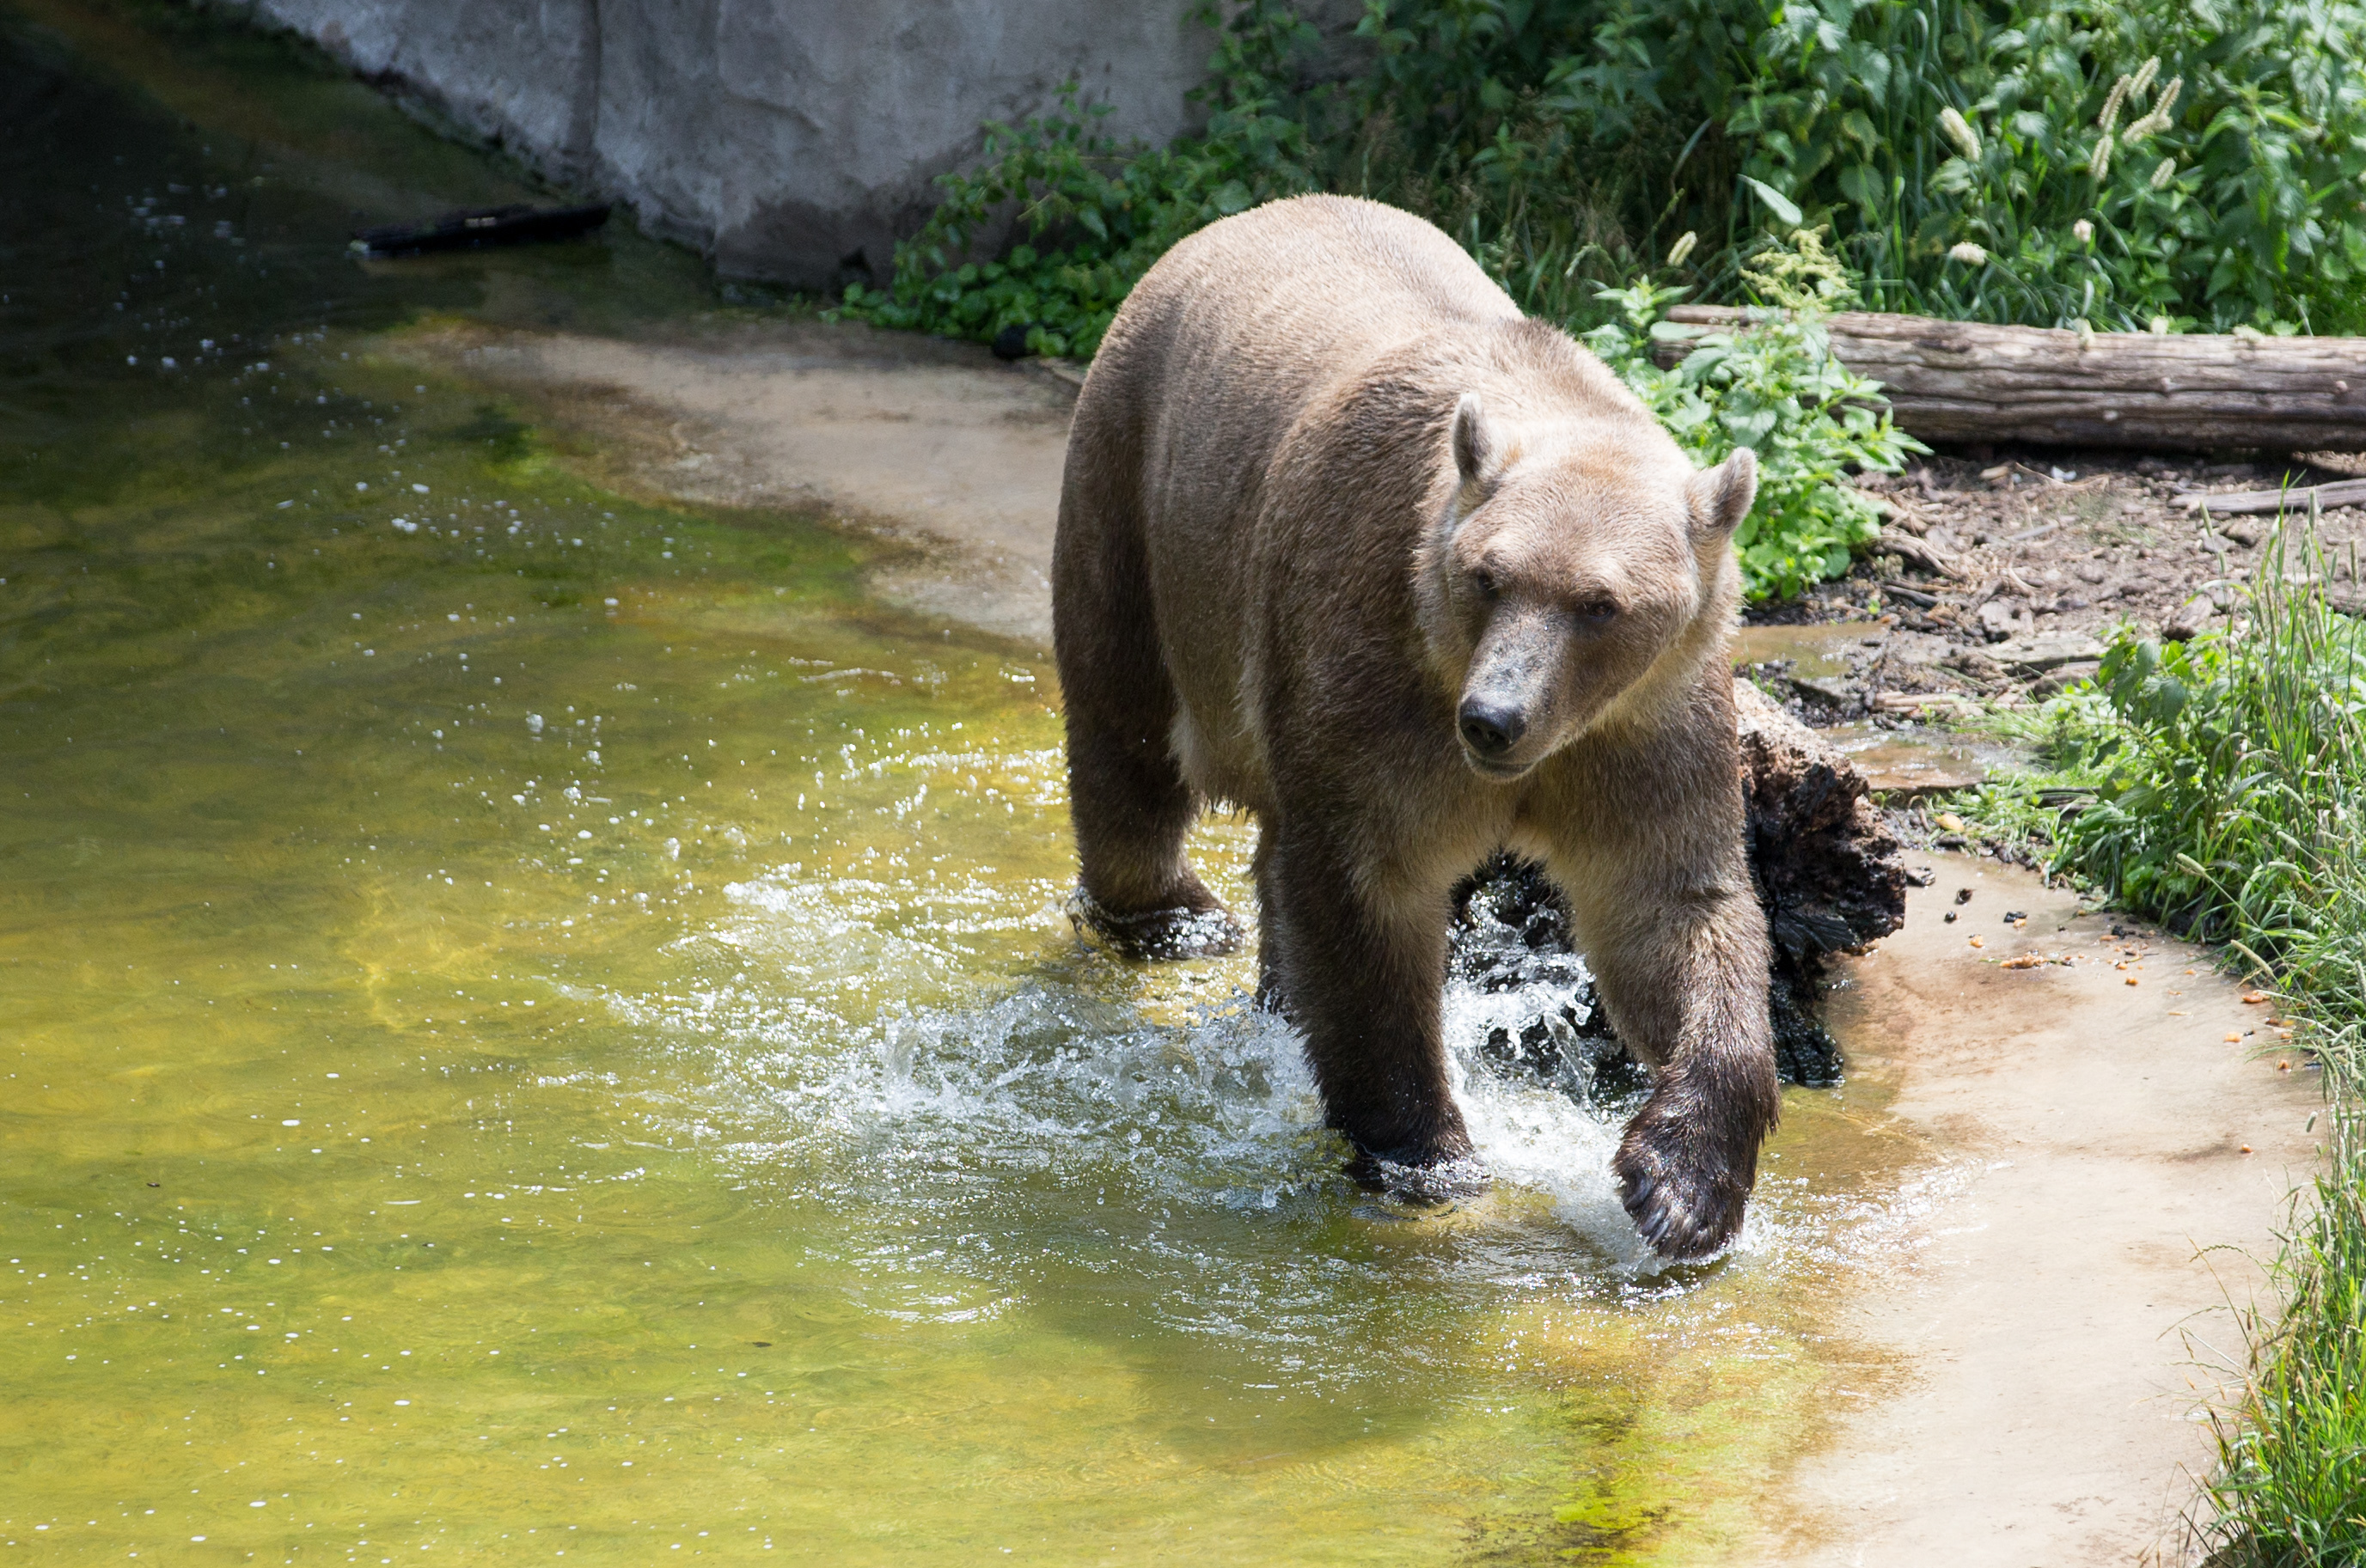 Az Osnabrueck-i állatkert Taps nevű grolárja. A medvehibrid azután maradt egyedül, hogy a vele együtt felnövő keánytestvére tavaly tavasszal kiszabadult, a német állatkerti őrség így kénytelen volt kilőni